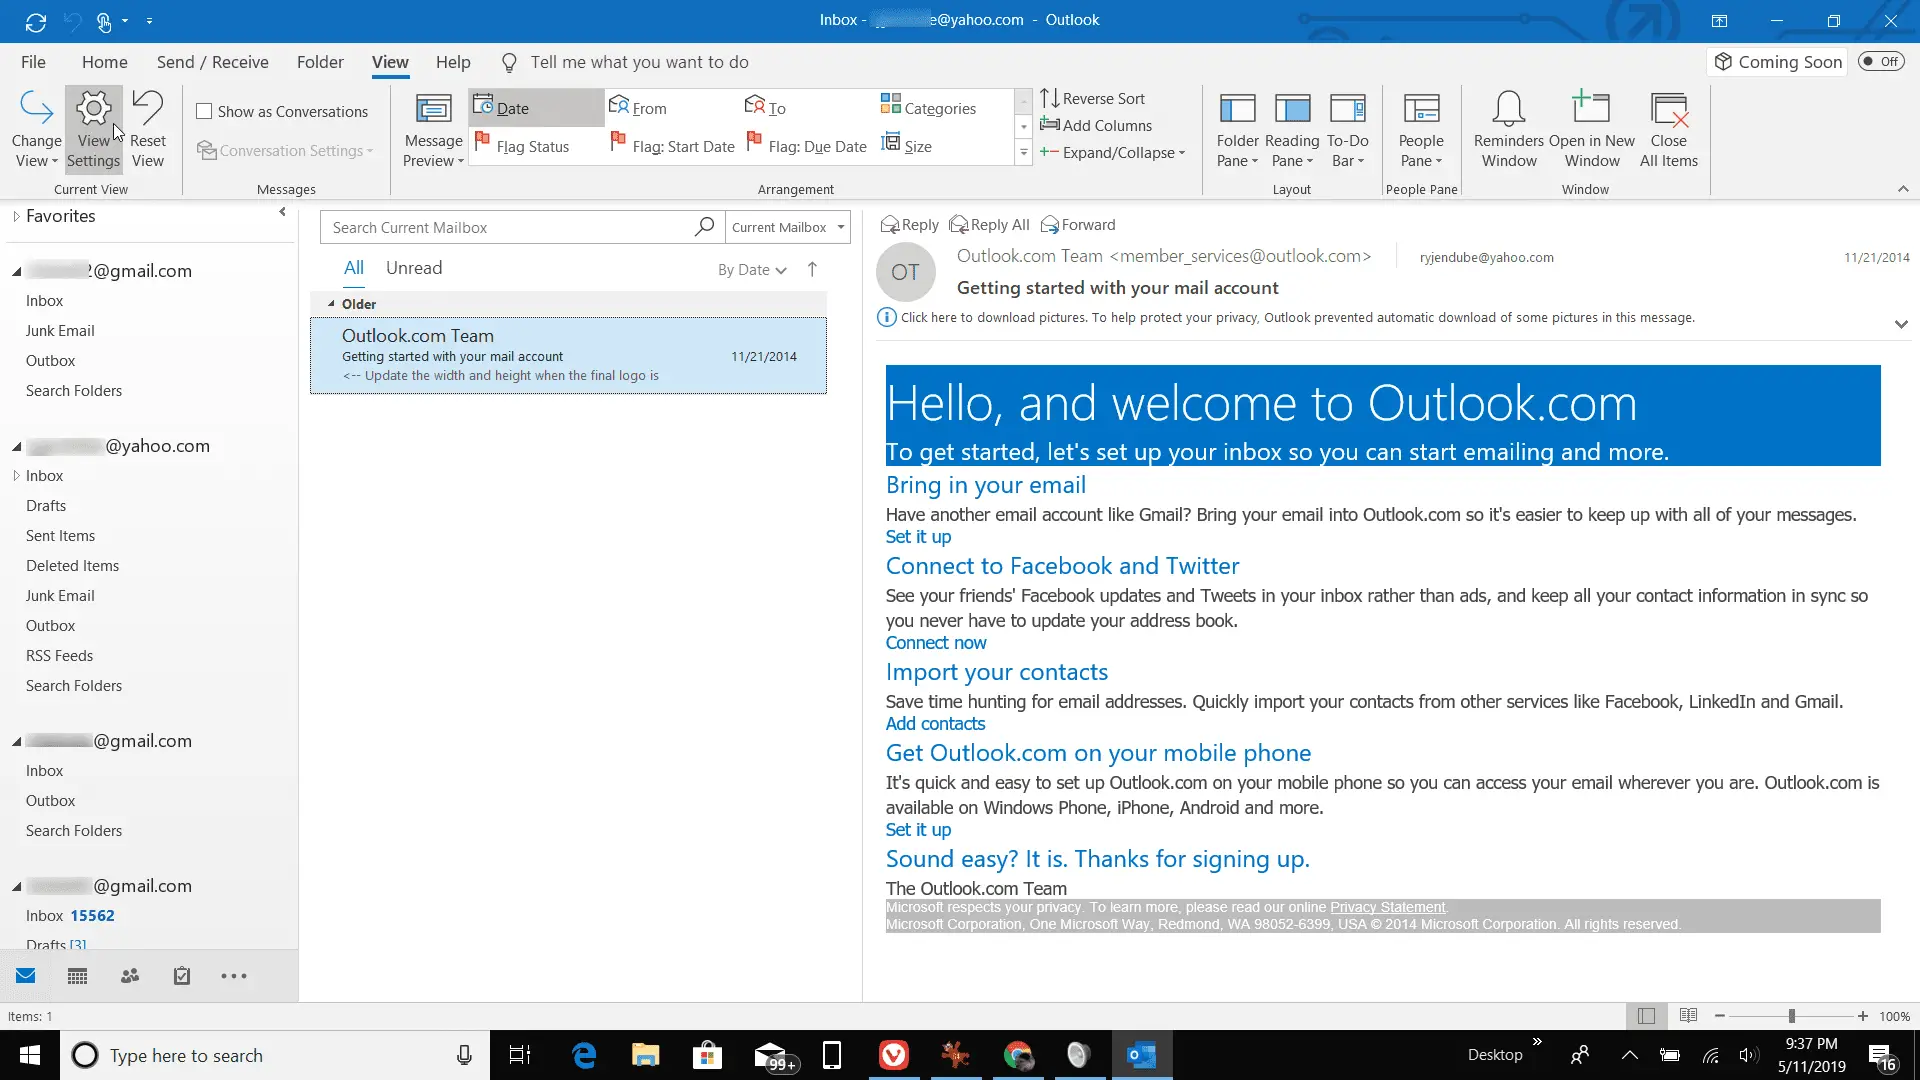 Captura de tela das configurações de exibição no Outlook